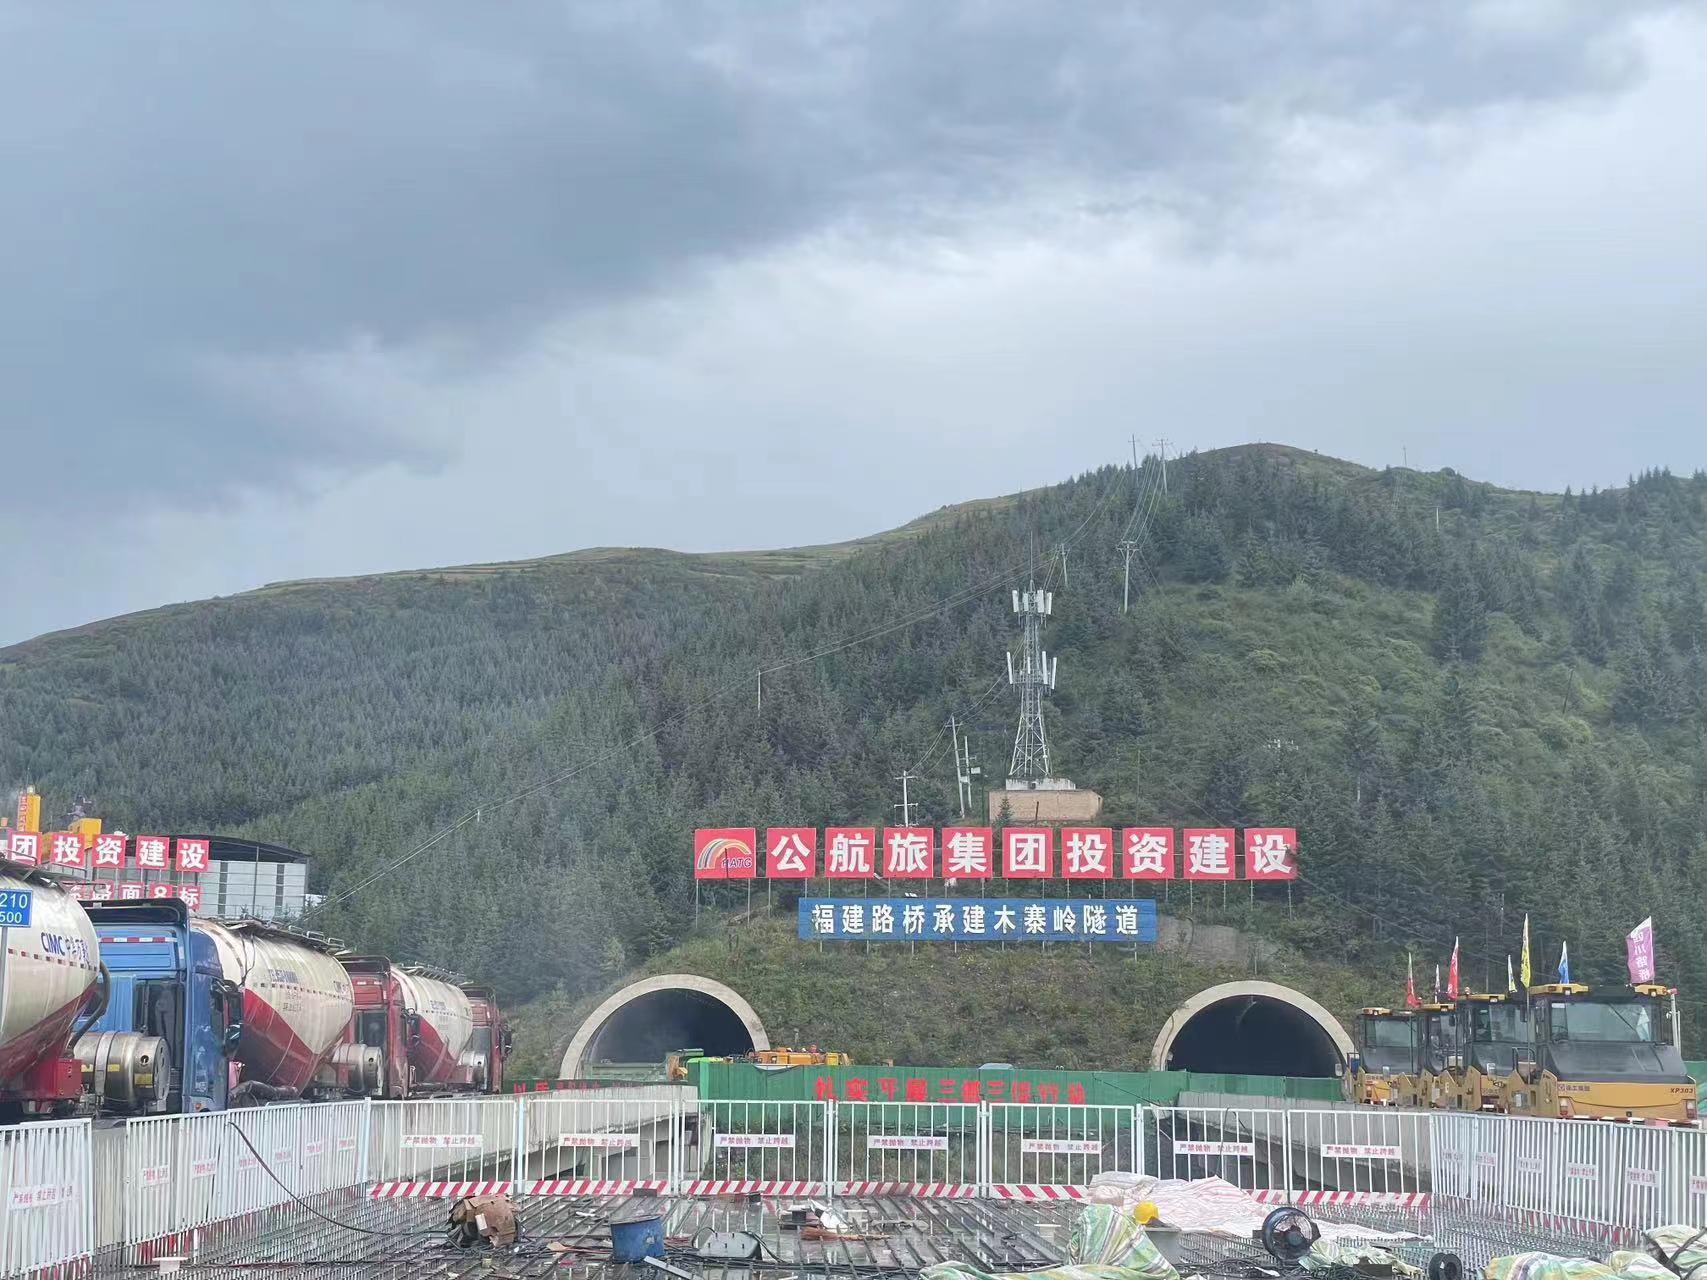 渭武高速木寨岭特长隧道攻克“米级”软岩大变形世界难题